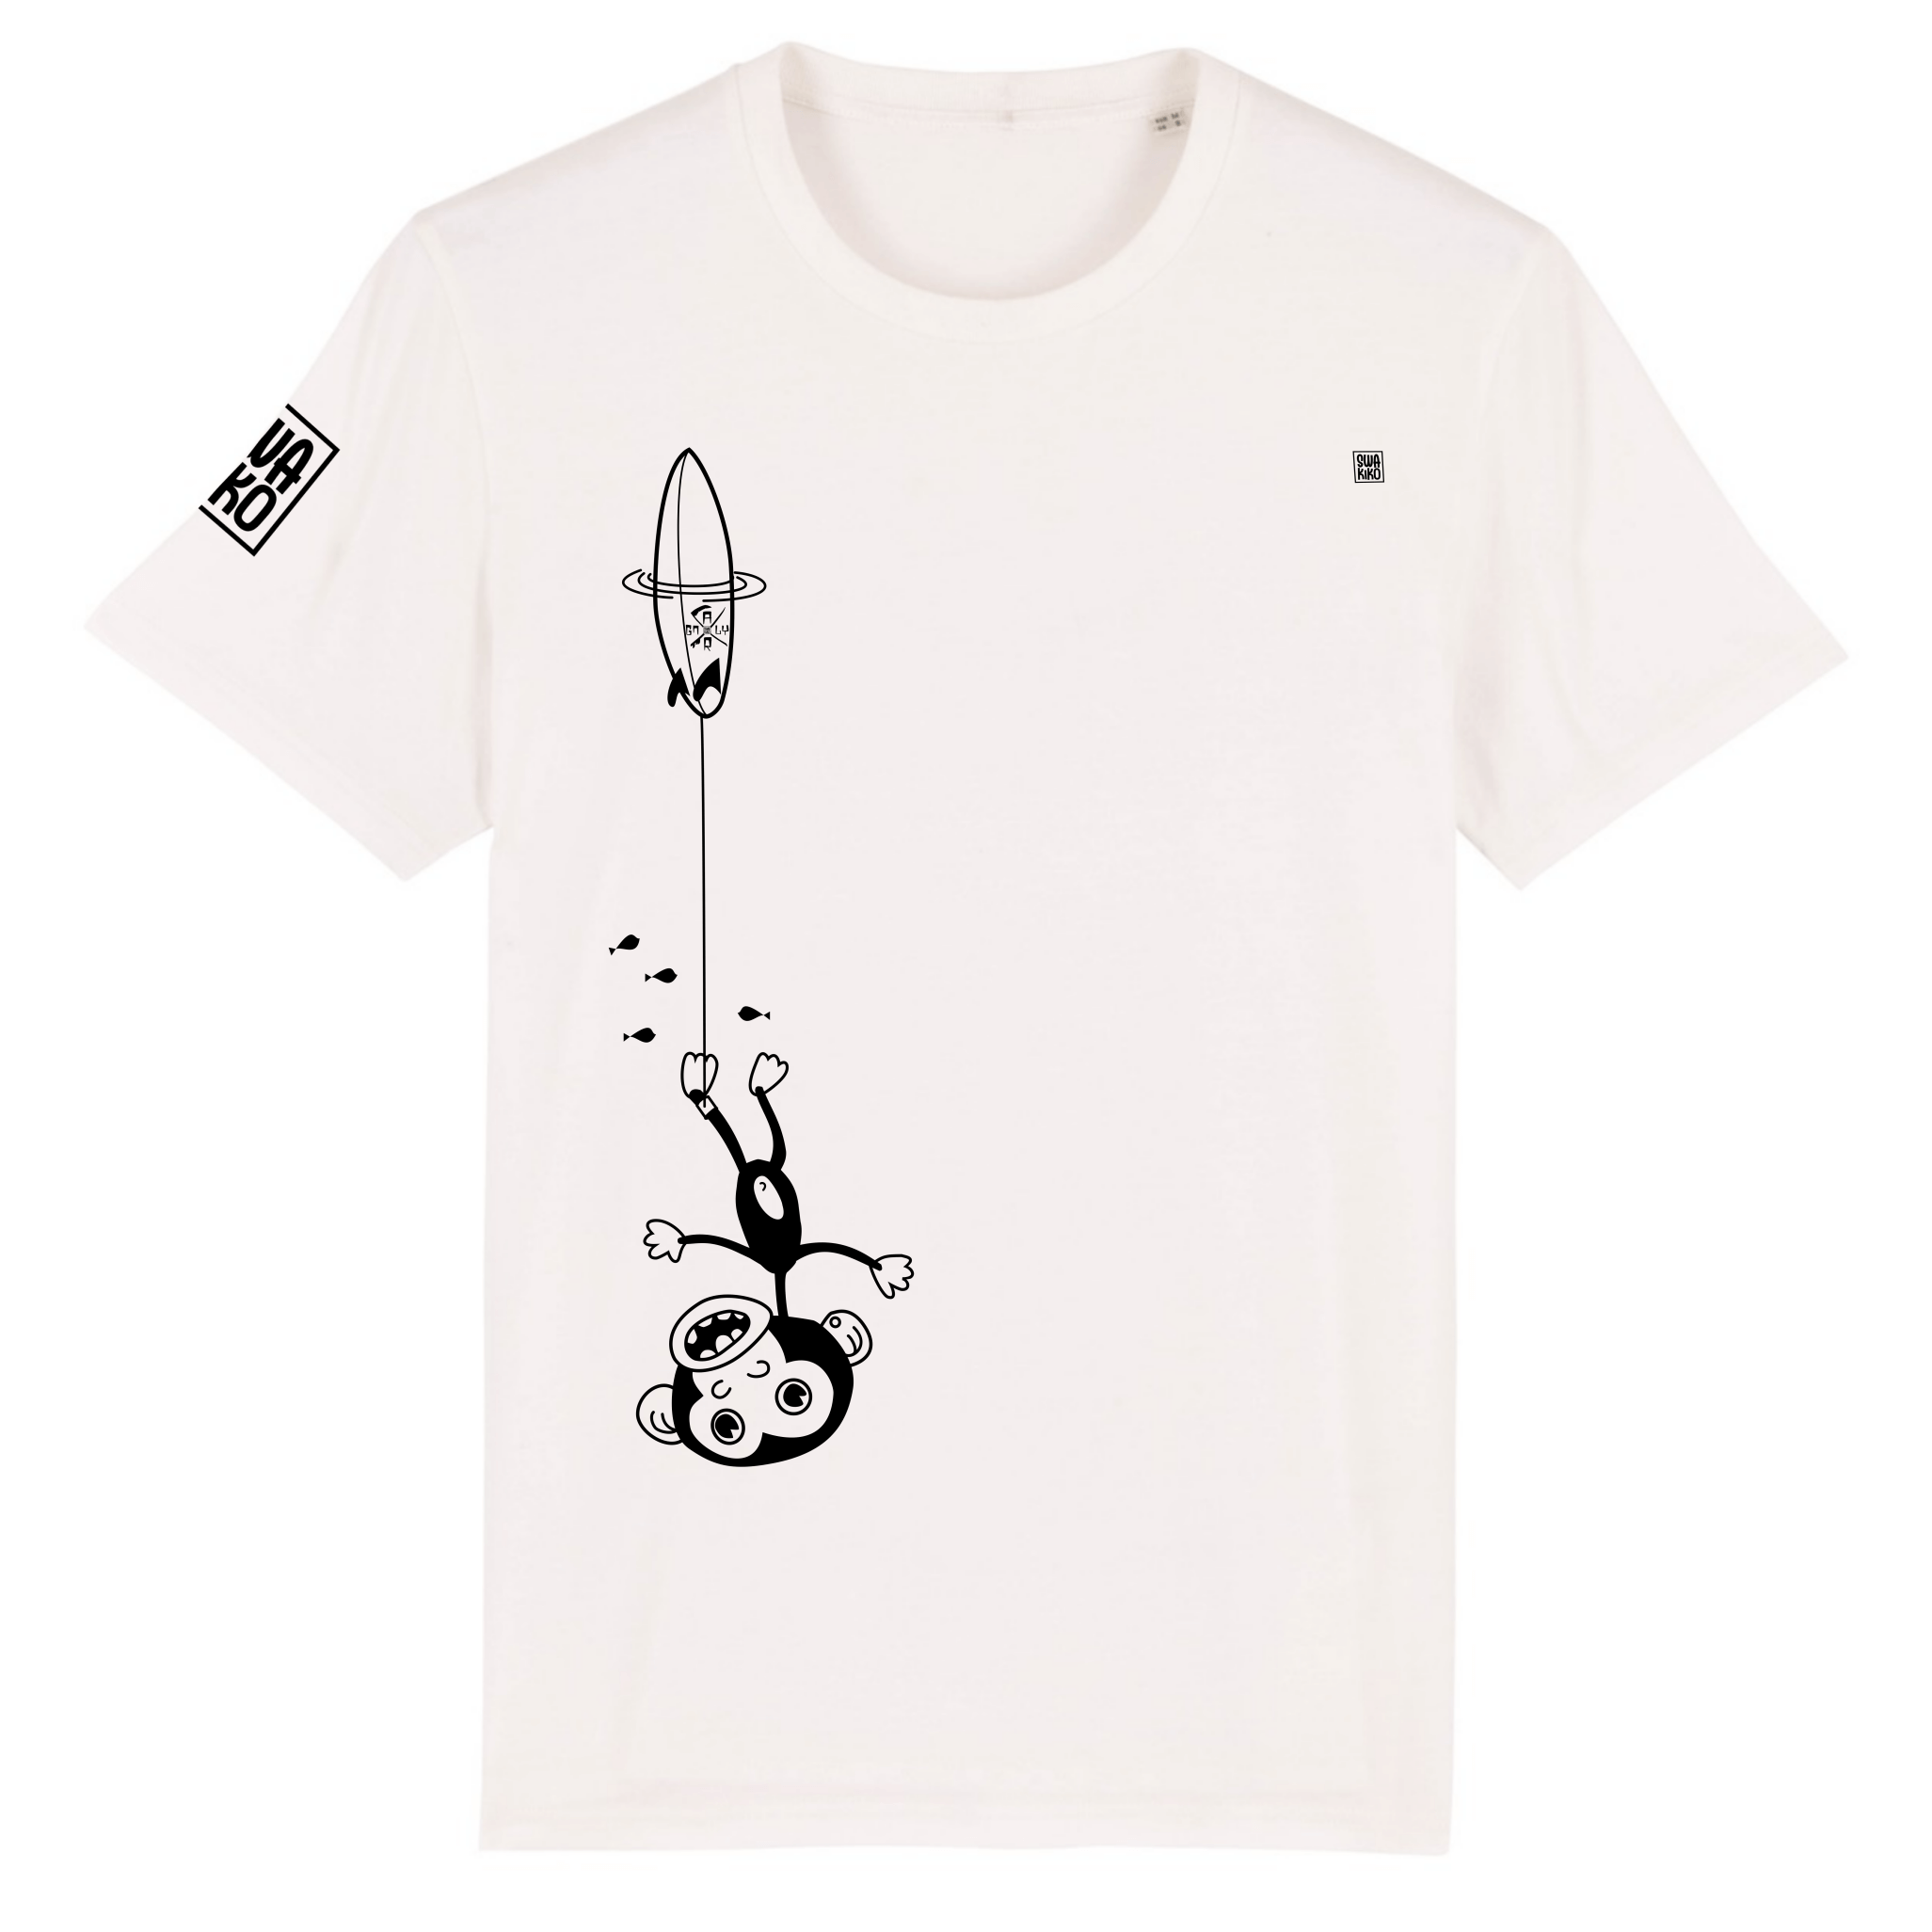 Grappig wit surf T-shirt: Ondersteboven hangende aap aan surfboard, gepakt door golf - Hilarisch design 